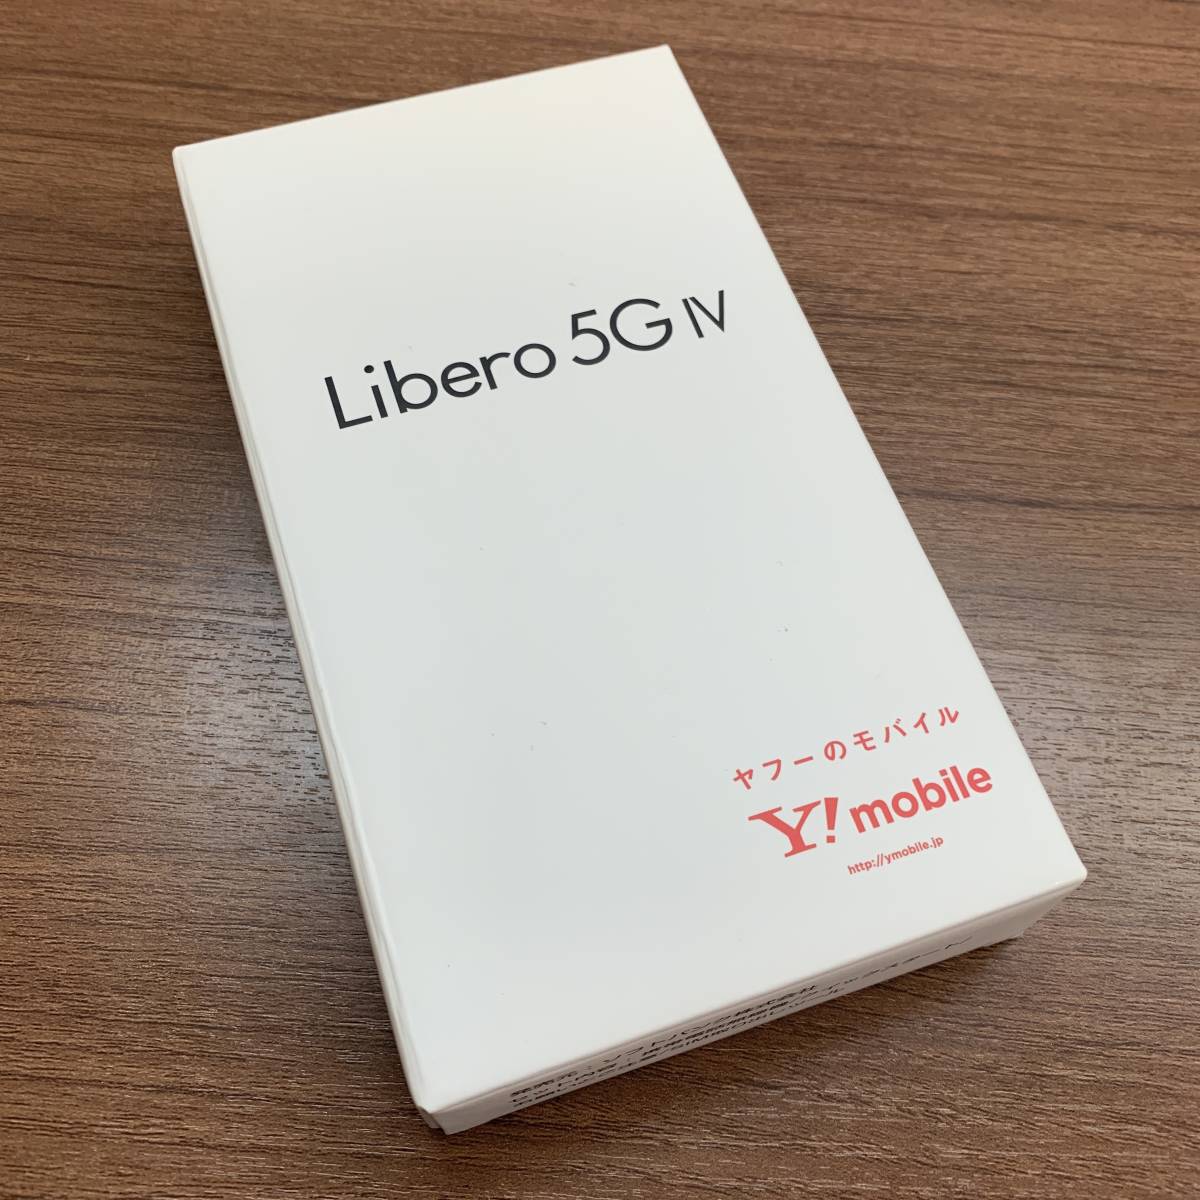 【新品未使用】Libero 5G Ⅳ A302ZT ブラック / SIMフリー リベロ Yモバ ワイモバイル スマホ Android アンドロイド